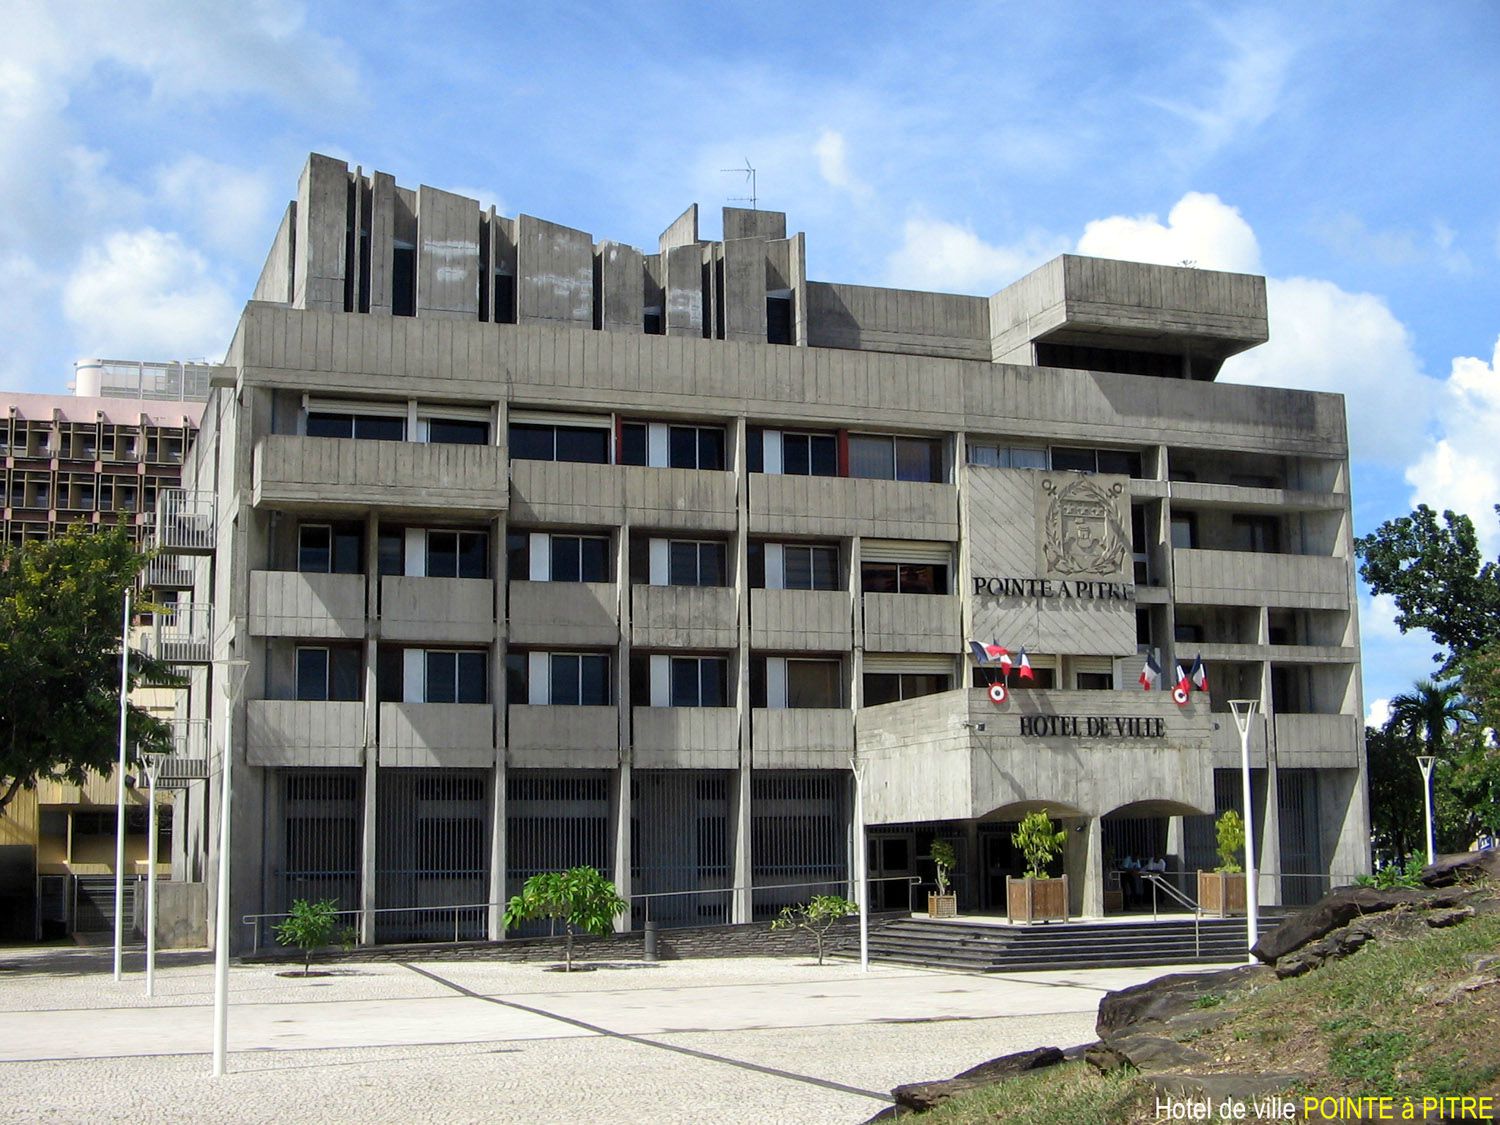     La mairie de Pointe-à-Pitre bloquée par l’UGTG

